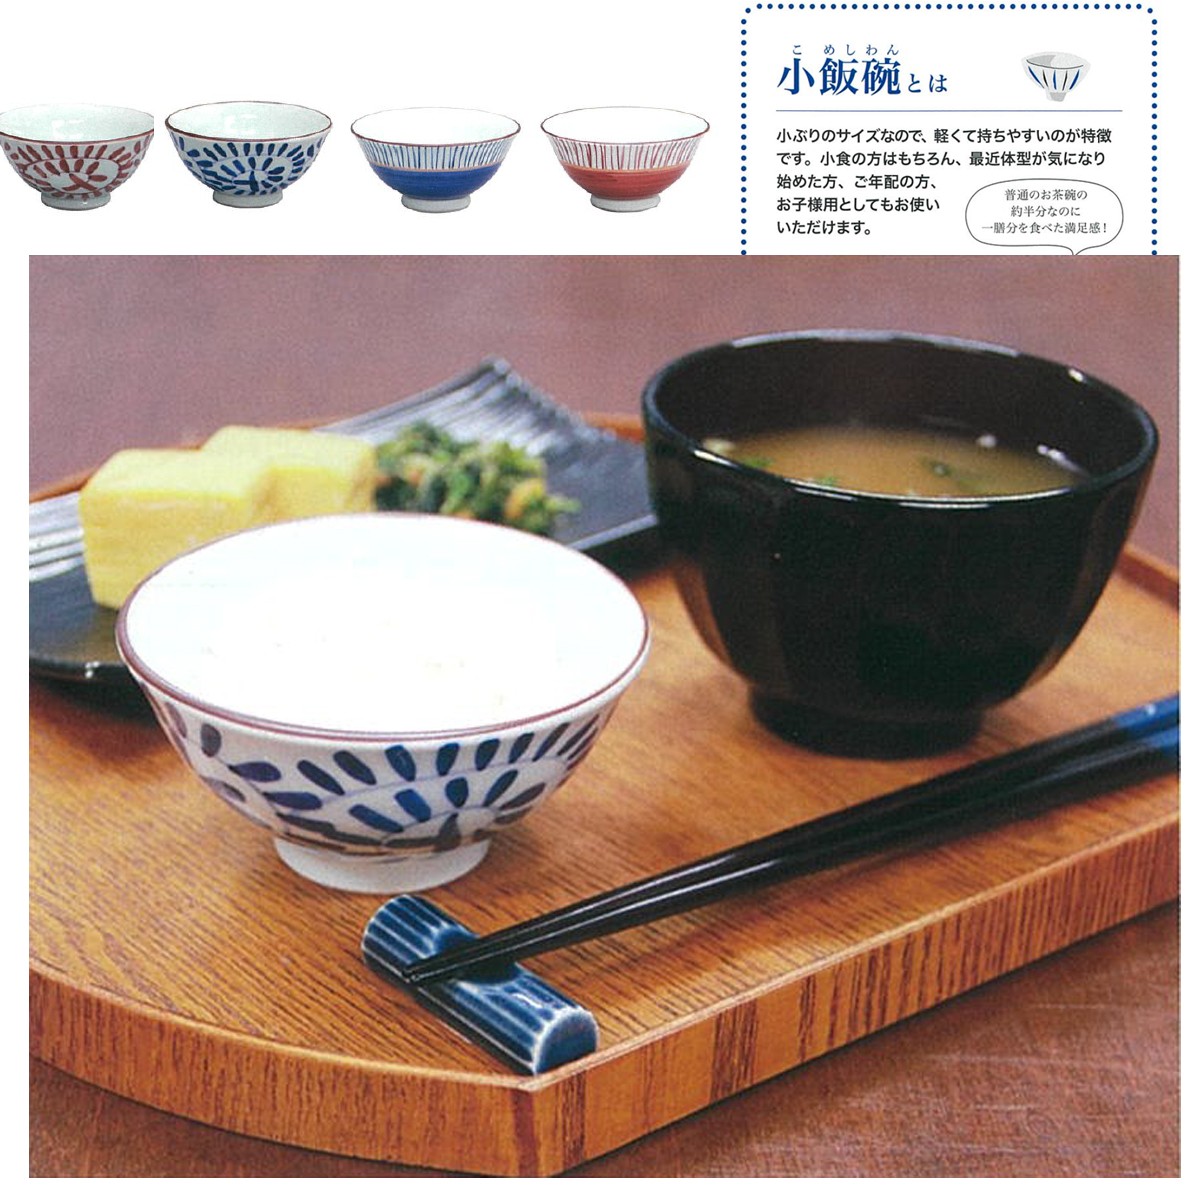 【藍花】有田焼 日本製 少ないご飯でも満足感ある小飯碗3